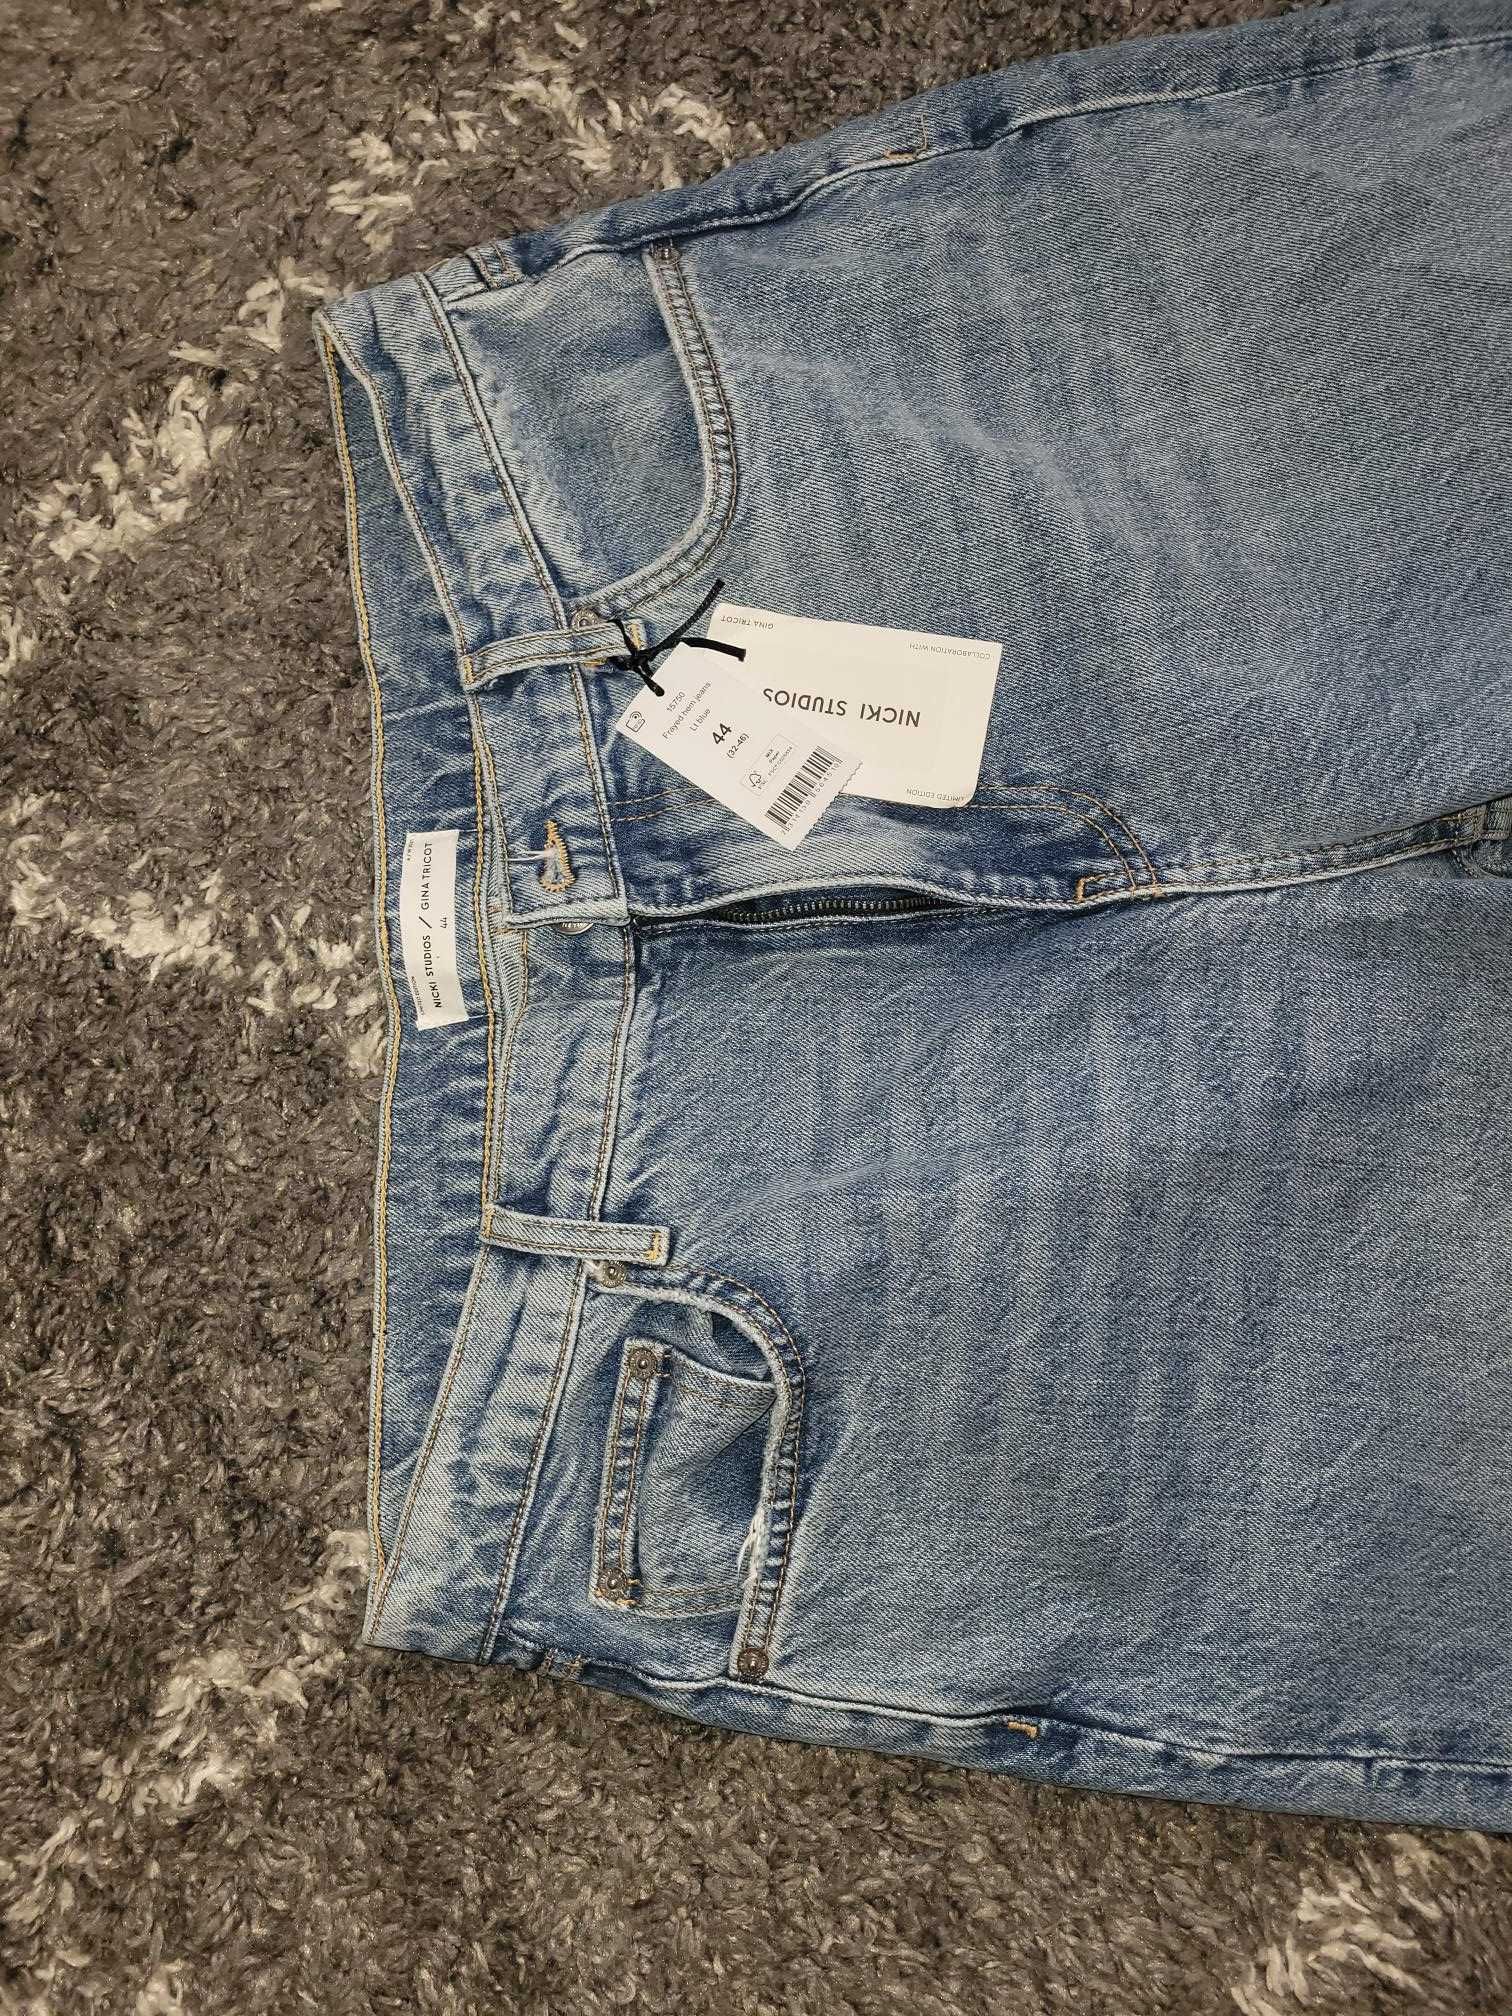 Spodnie jeansy męskie rozmiar 32/45 marki Nicki Studios.